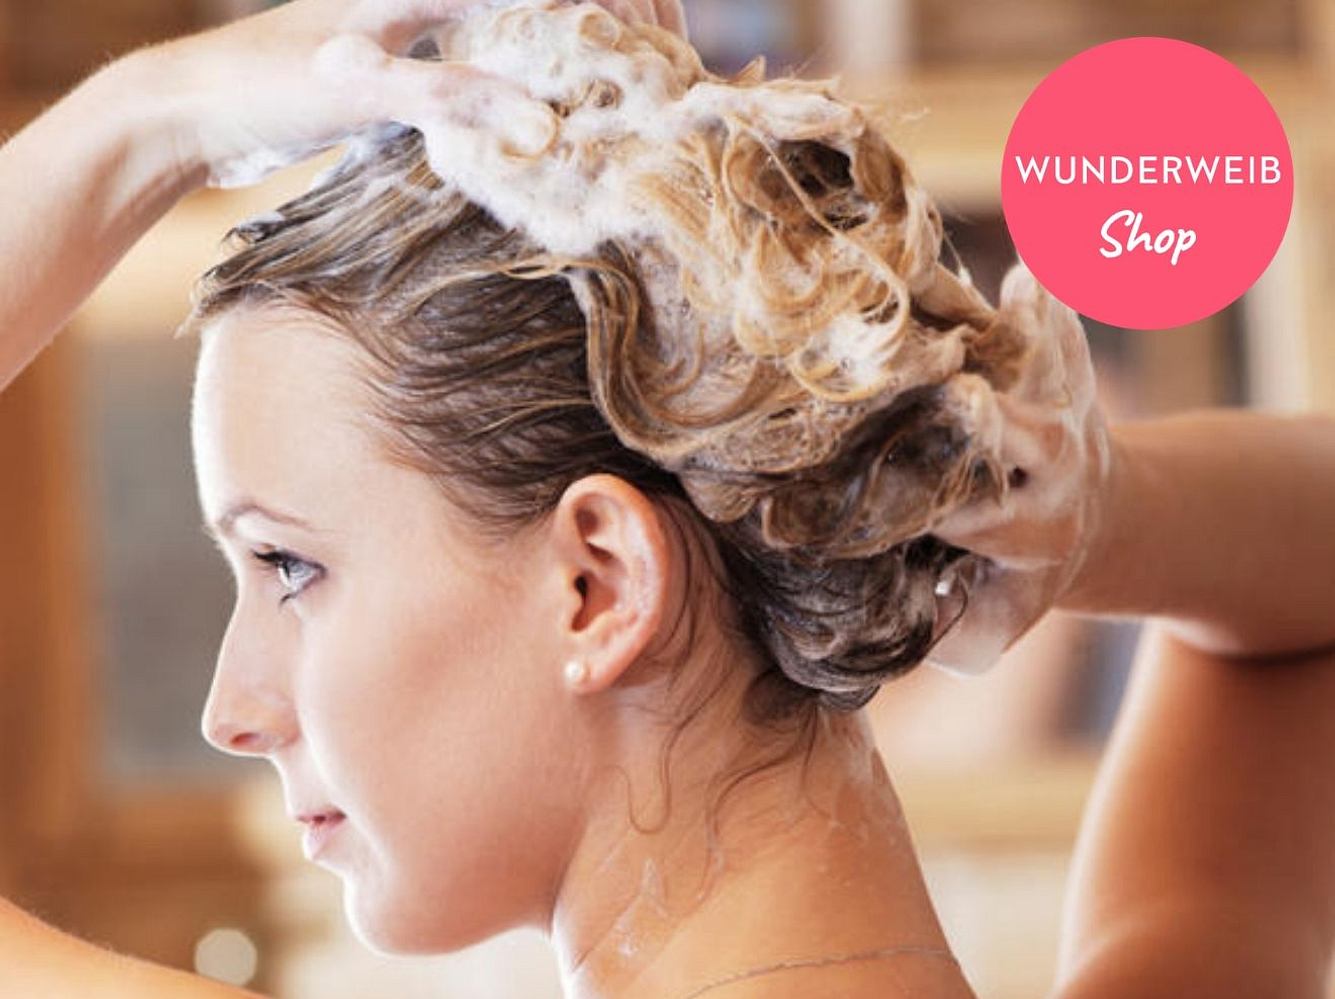 Nie wieder Juckreiz: Das ist das beste Shampoo für trockene Kopfhaut